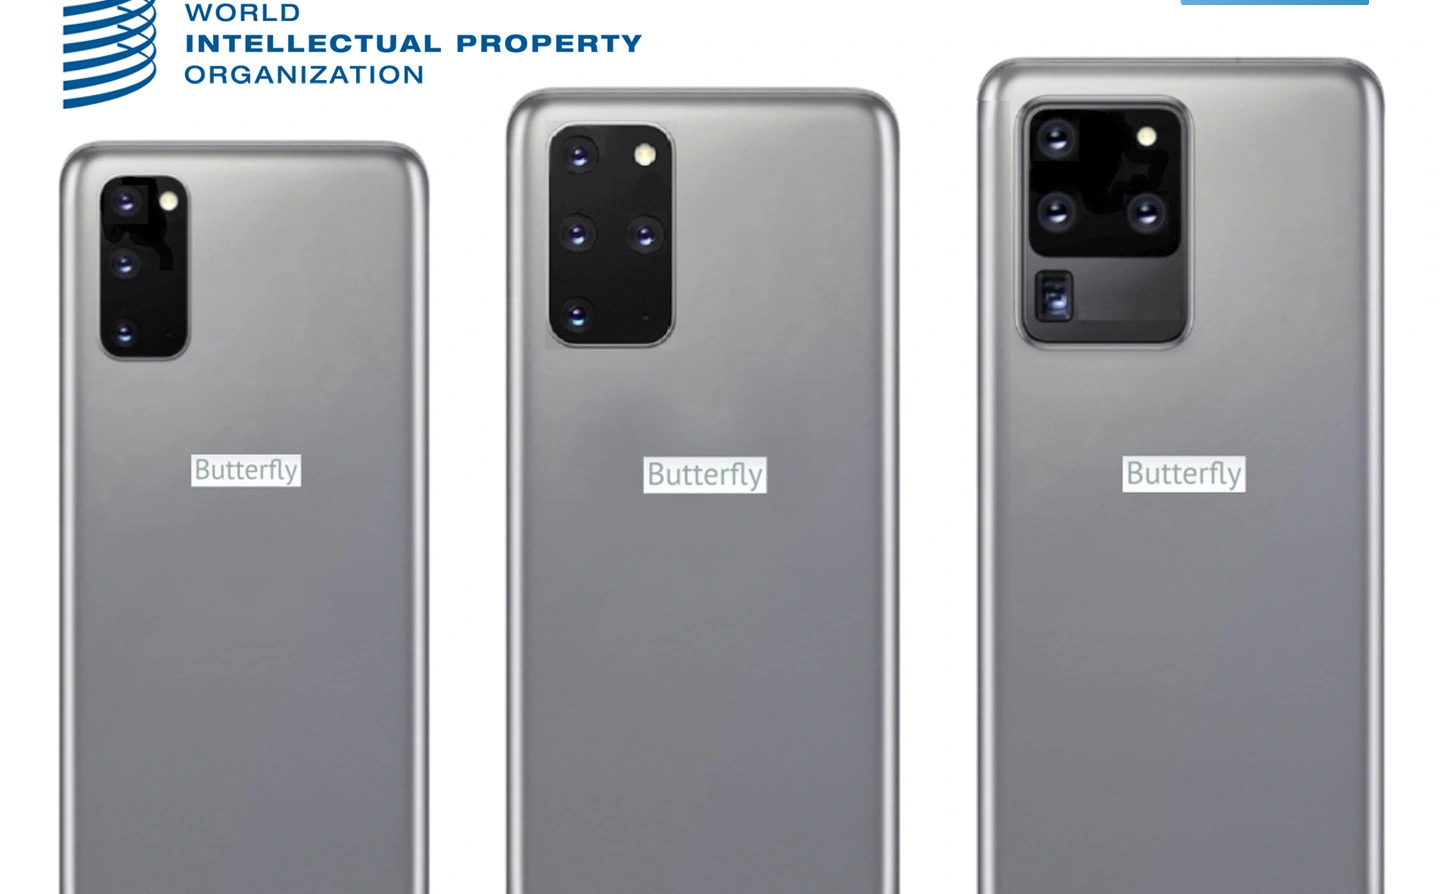 Xuất hiện loạt điện thoại giả mạo Galaxy S20 và Z Flip của Samsung, khác mỗi việc không có nút bấm vật lý